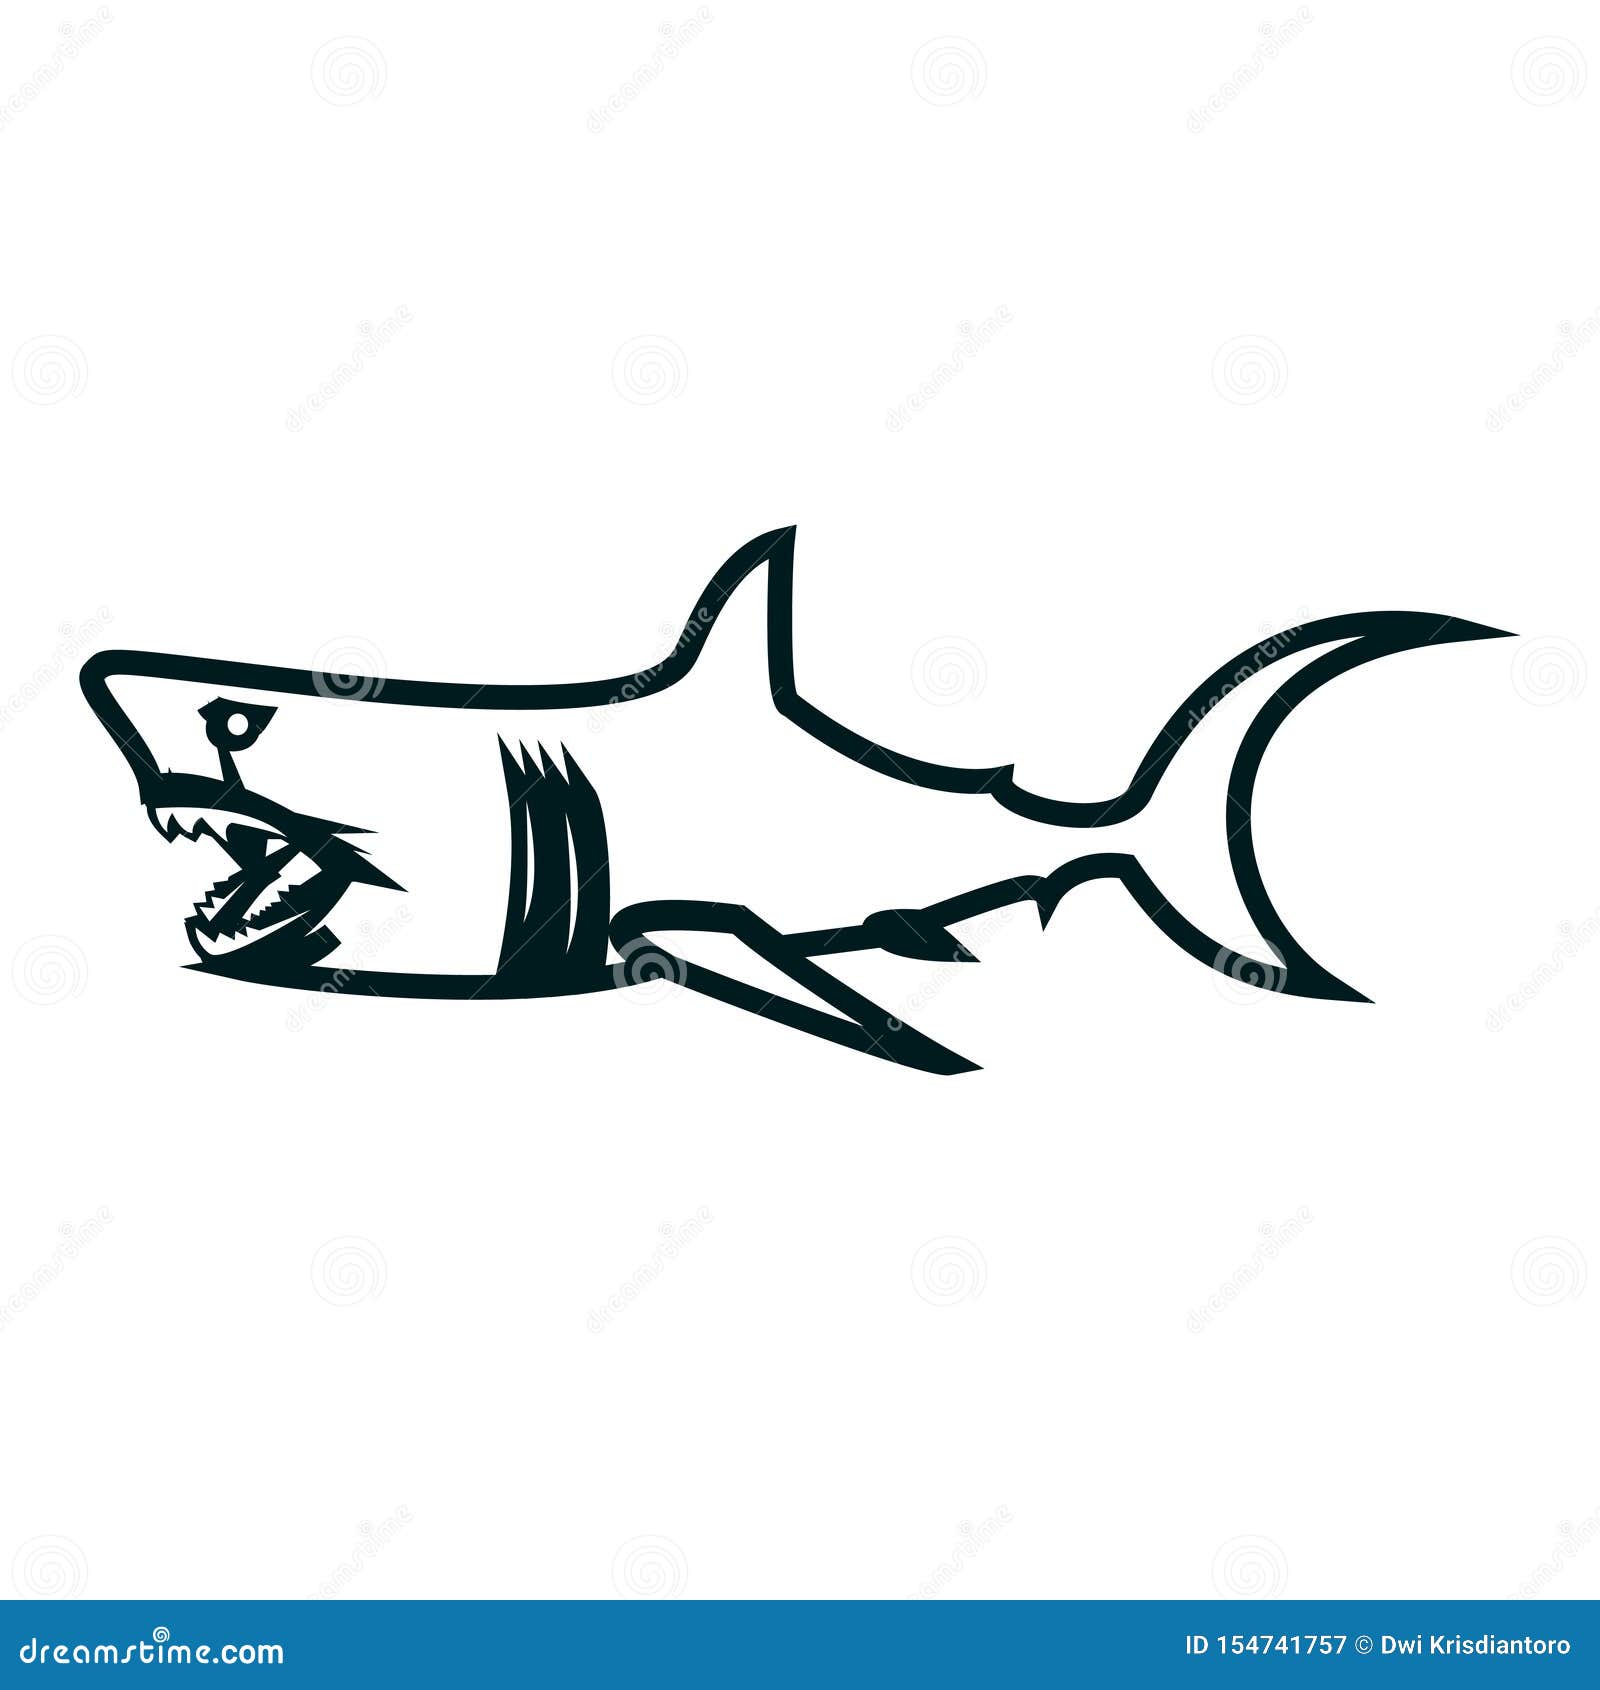 Shark simple outline design. 